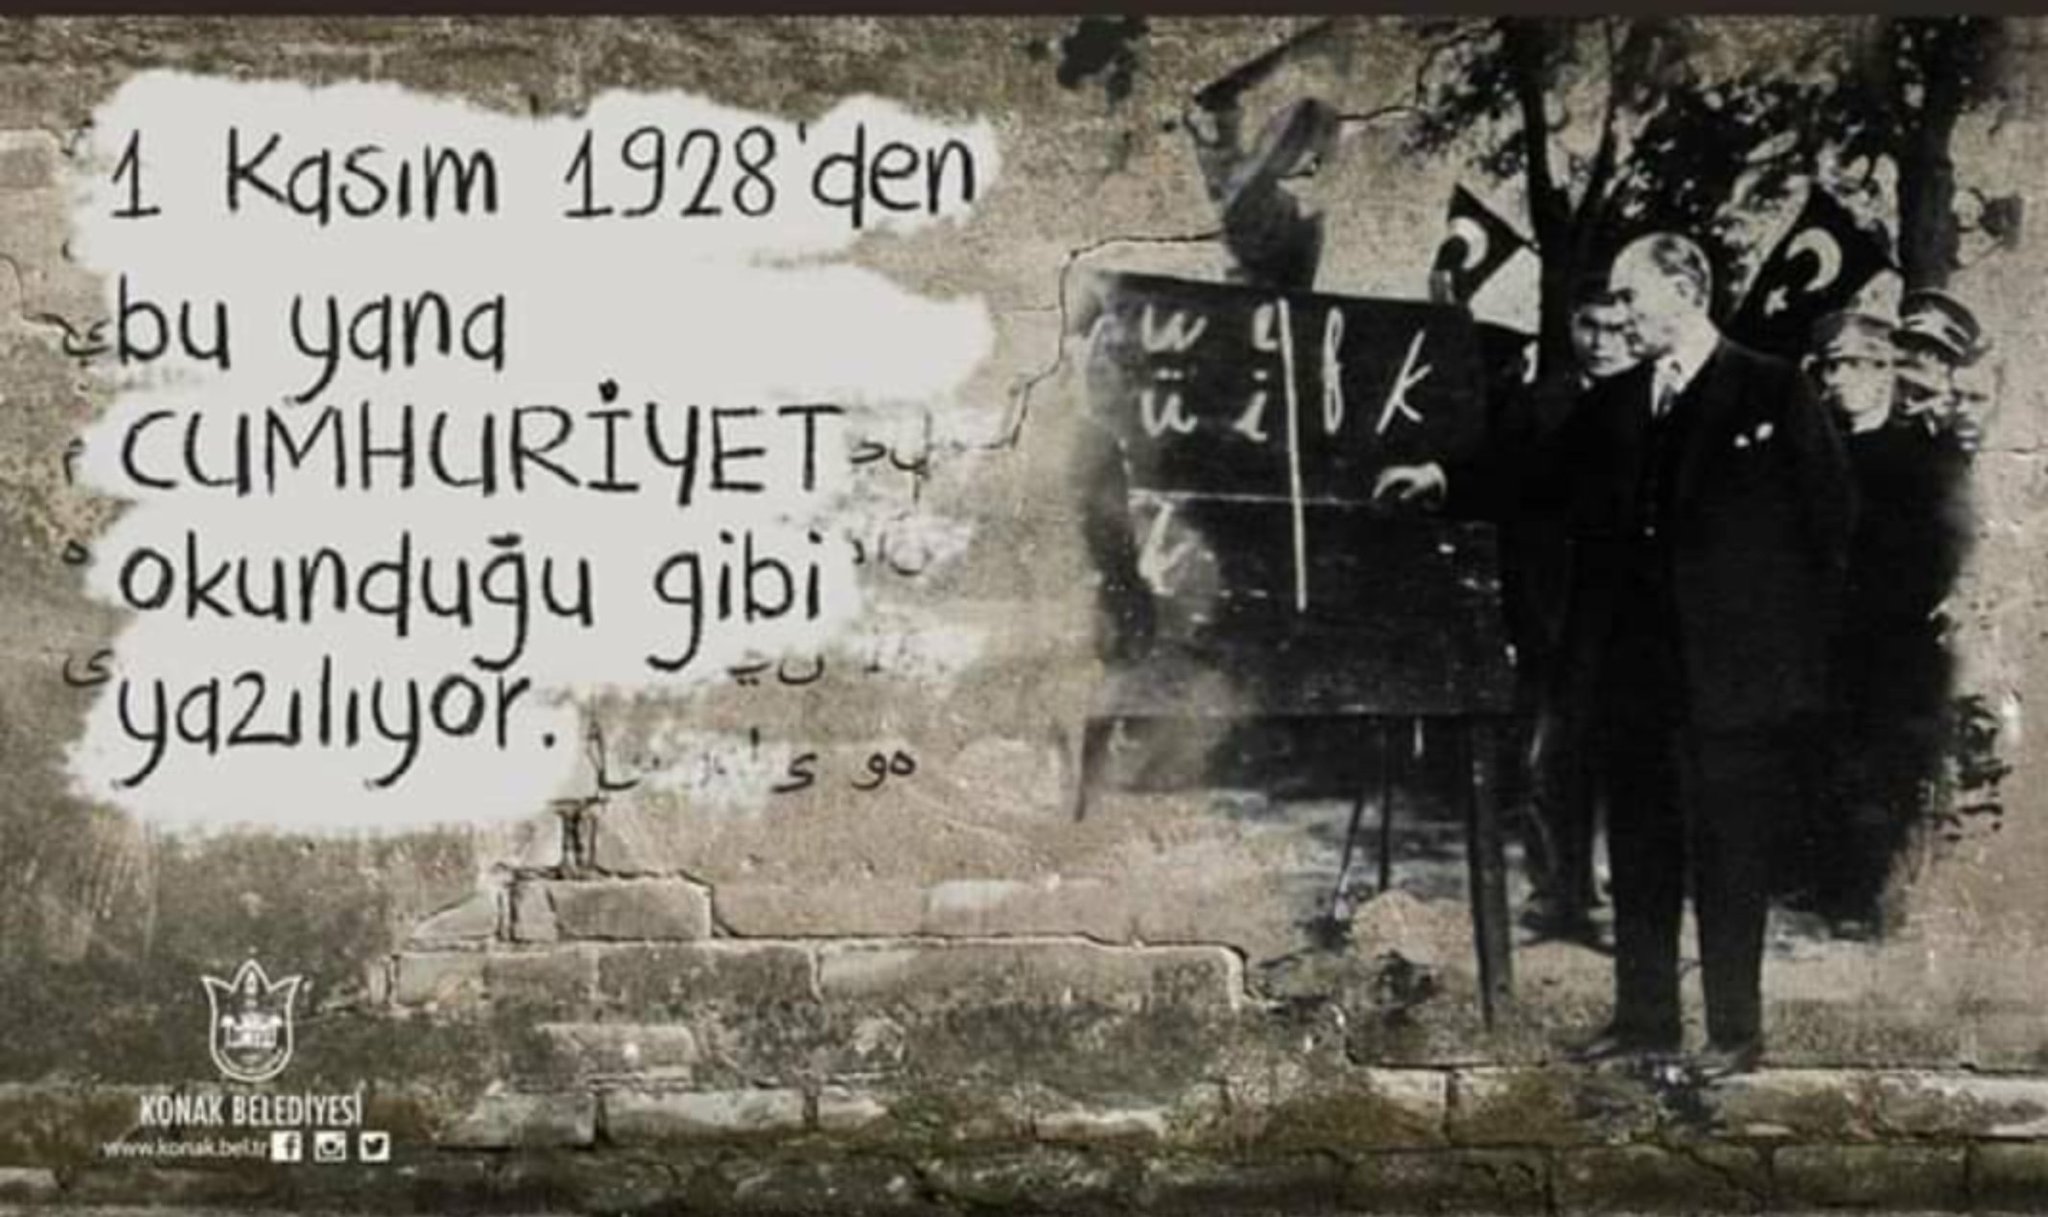 filiz on X: "#HarfDevrimi Kutlu Olsun! 1 Kasım 1922 Saltanatın  Kaldırılması. 1 Kasım 1928 Harf Devrimi. Cumhuriyet tarihinin kilometre  taşlarından ikisi. https://t.co/vm21T73FHE" / X